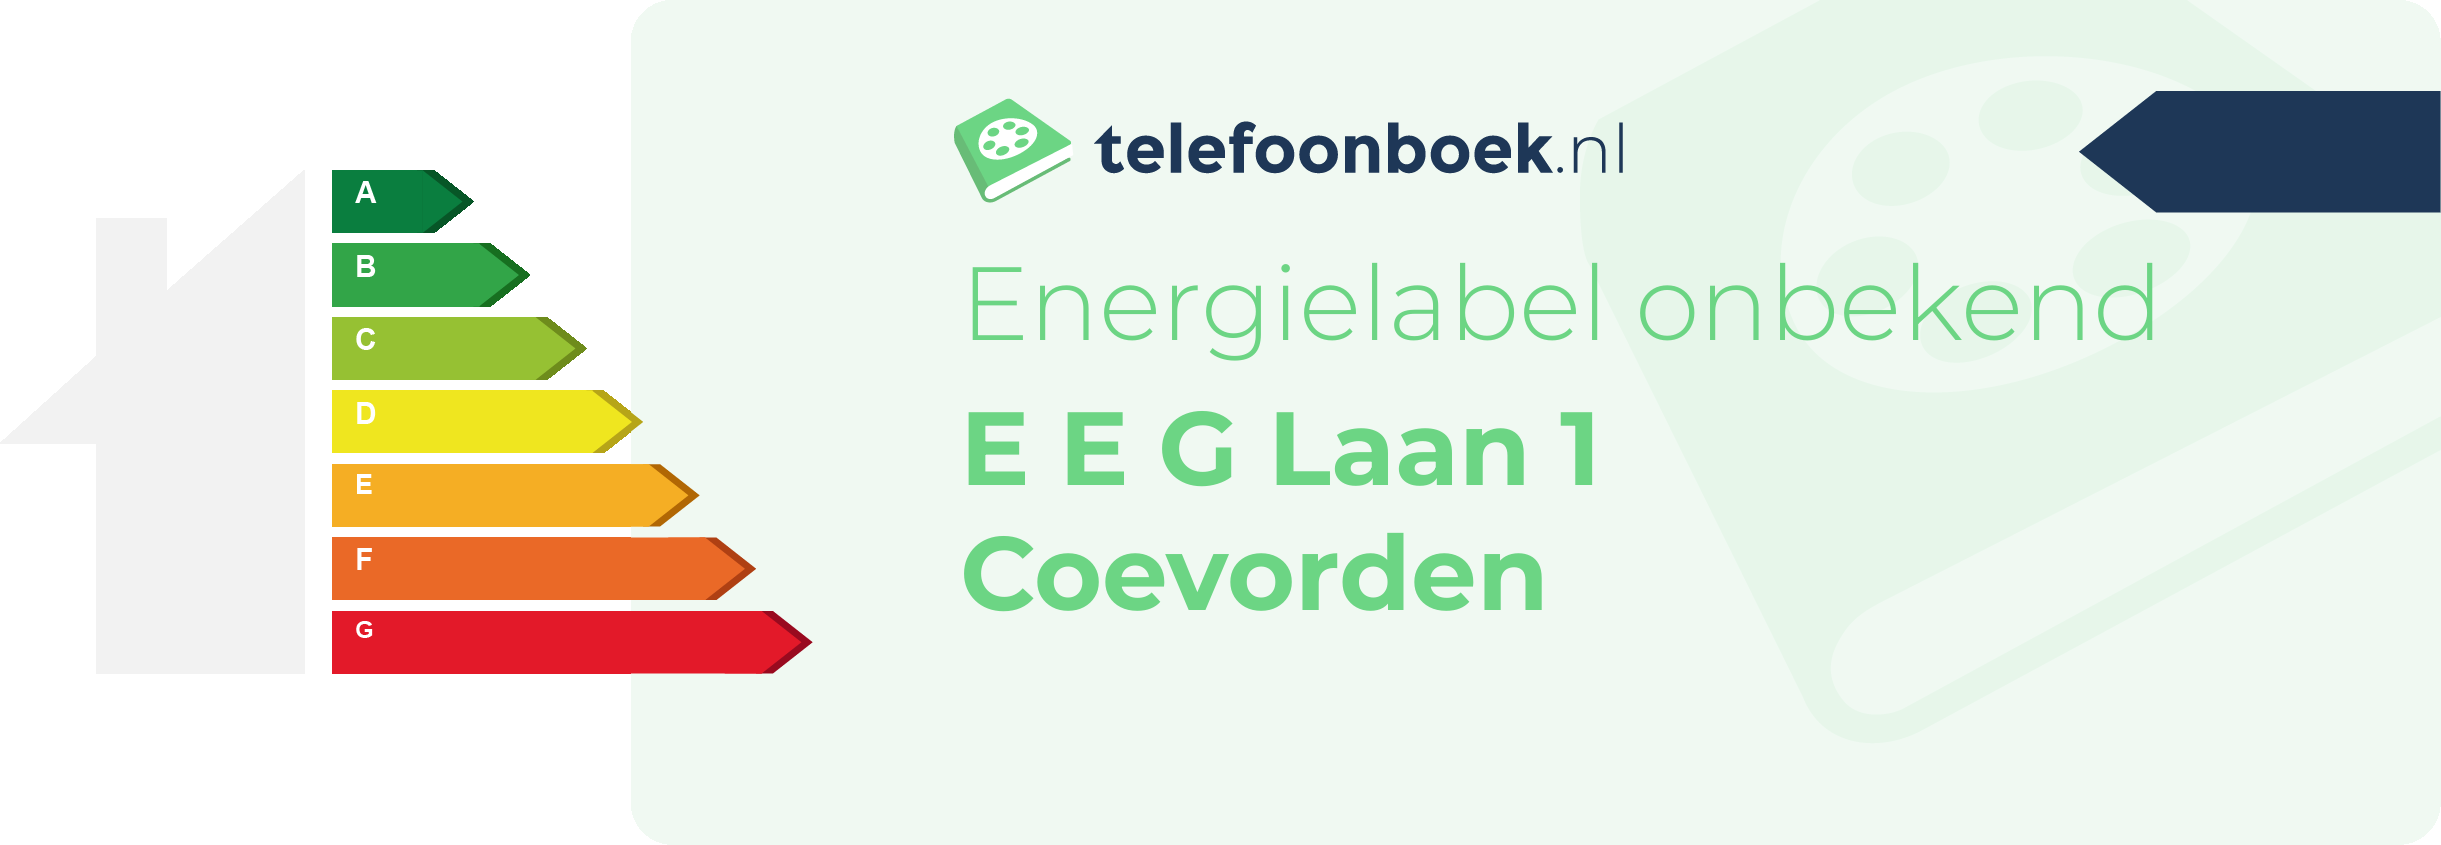 Energielabel E E G Laan 1 Coevorden